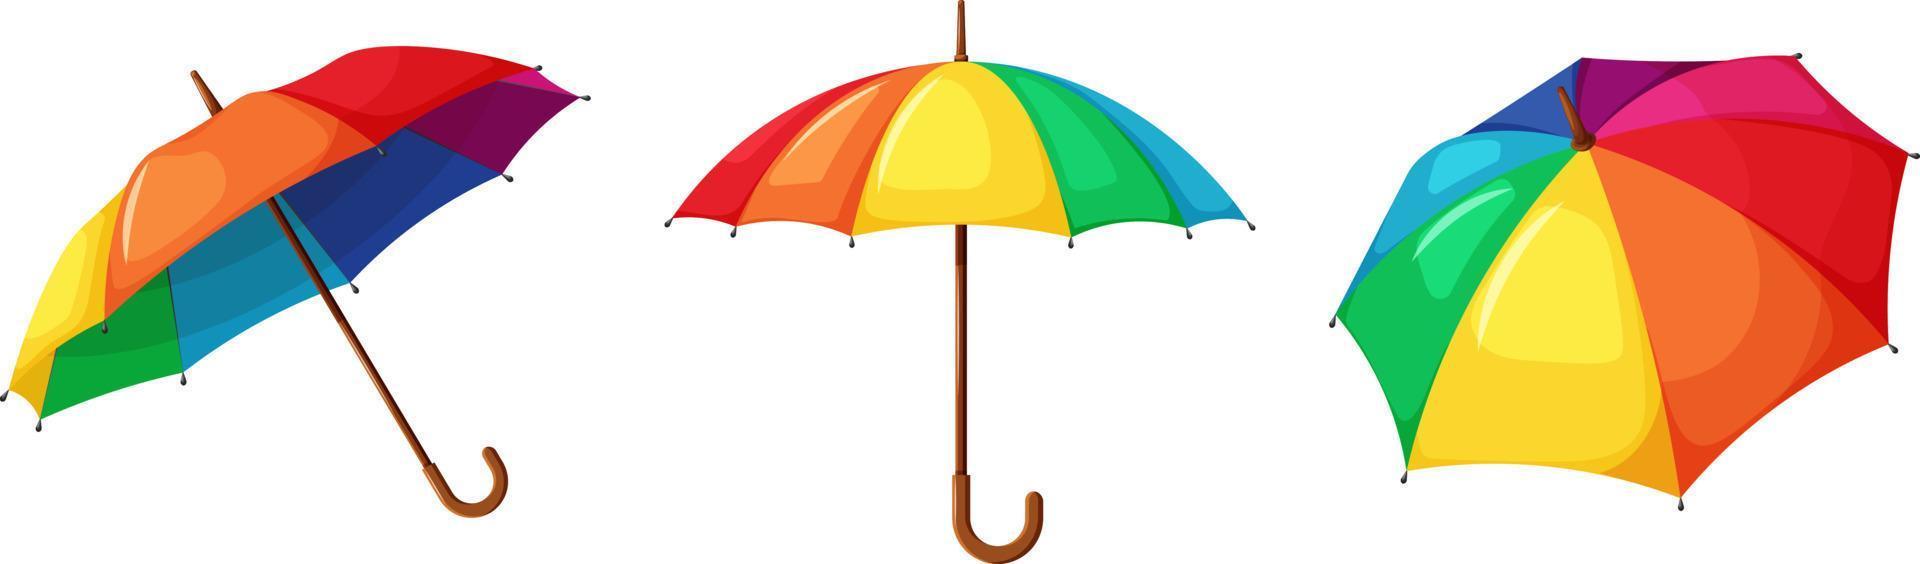 parapluie arc-en-ciel lumineux en style cartoon vecteur